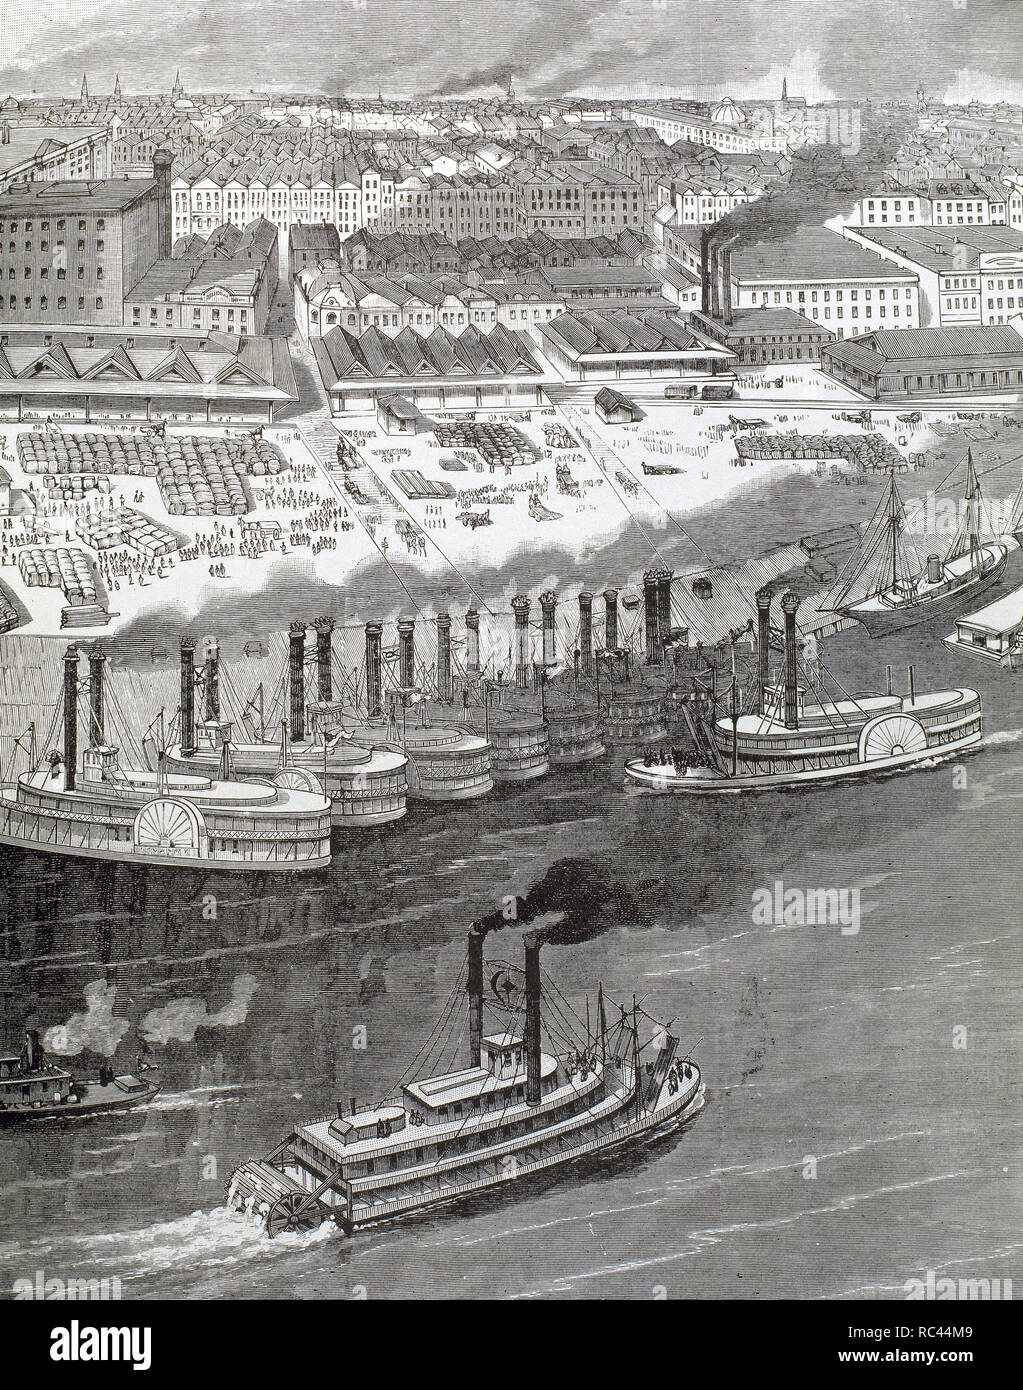 USA. des 19. Jahrhunderts. Dampf-Boote in einem Hafen in Mississippi Fluss. Gravur. Stockfoto